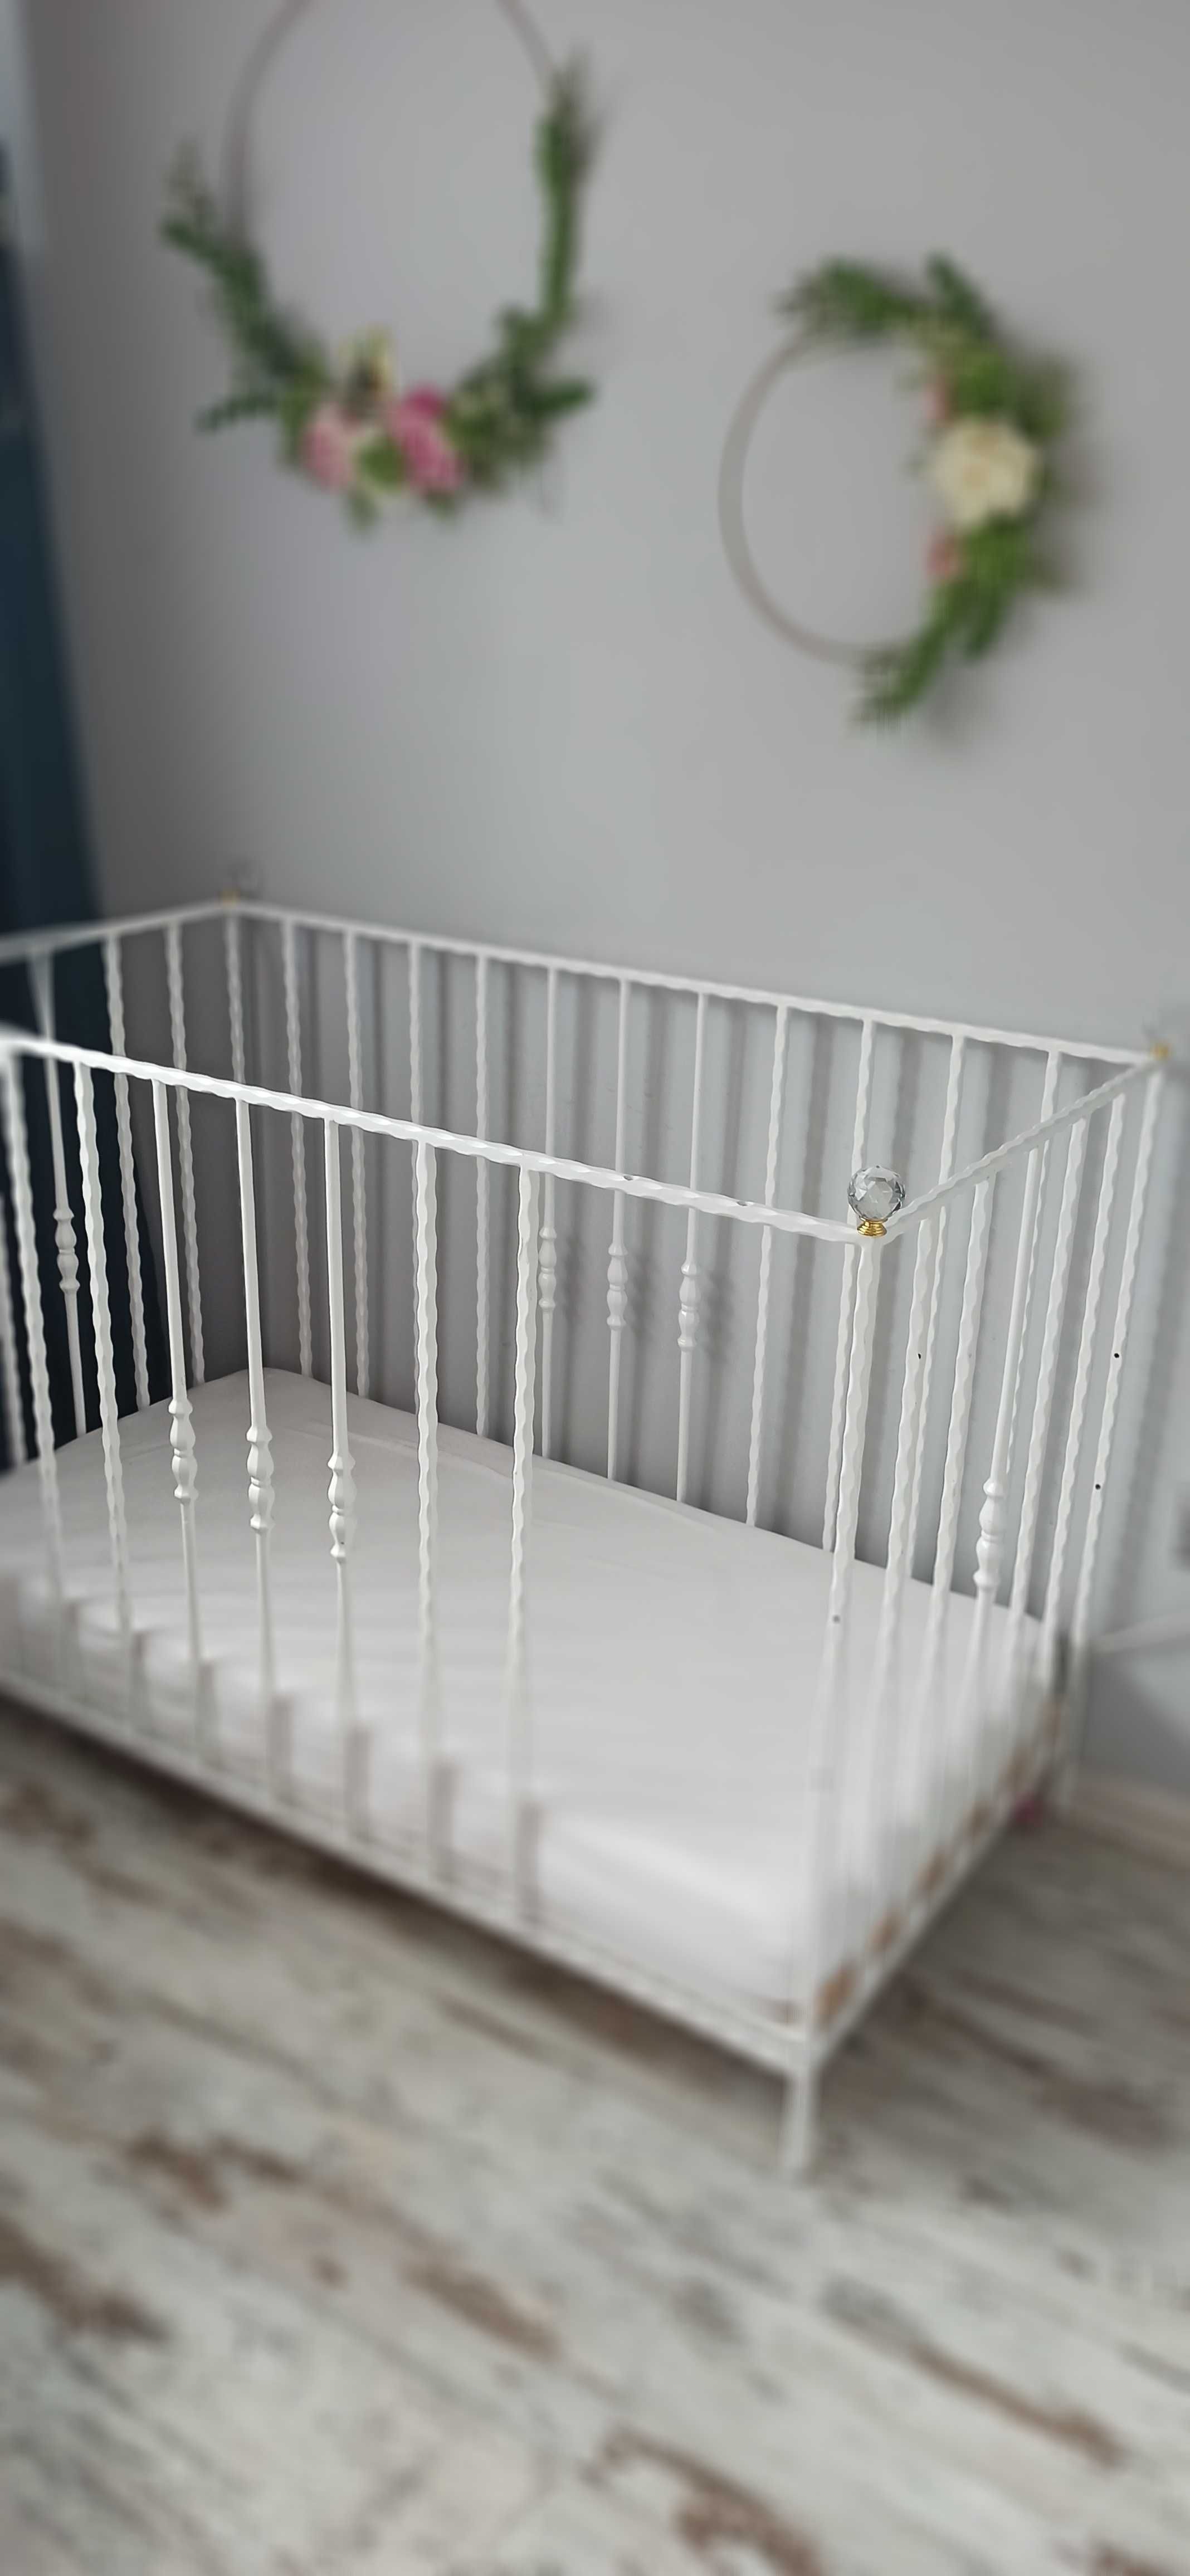 Stylizowane białe metalowe łóżeczko